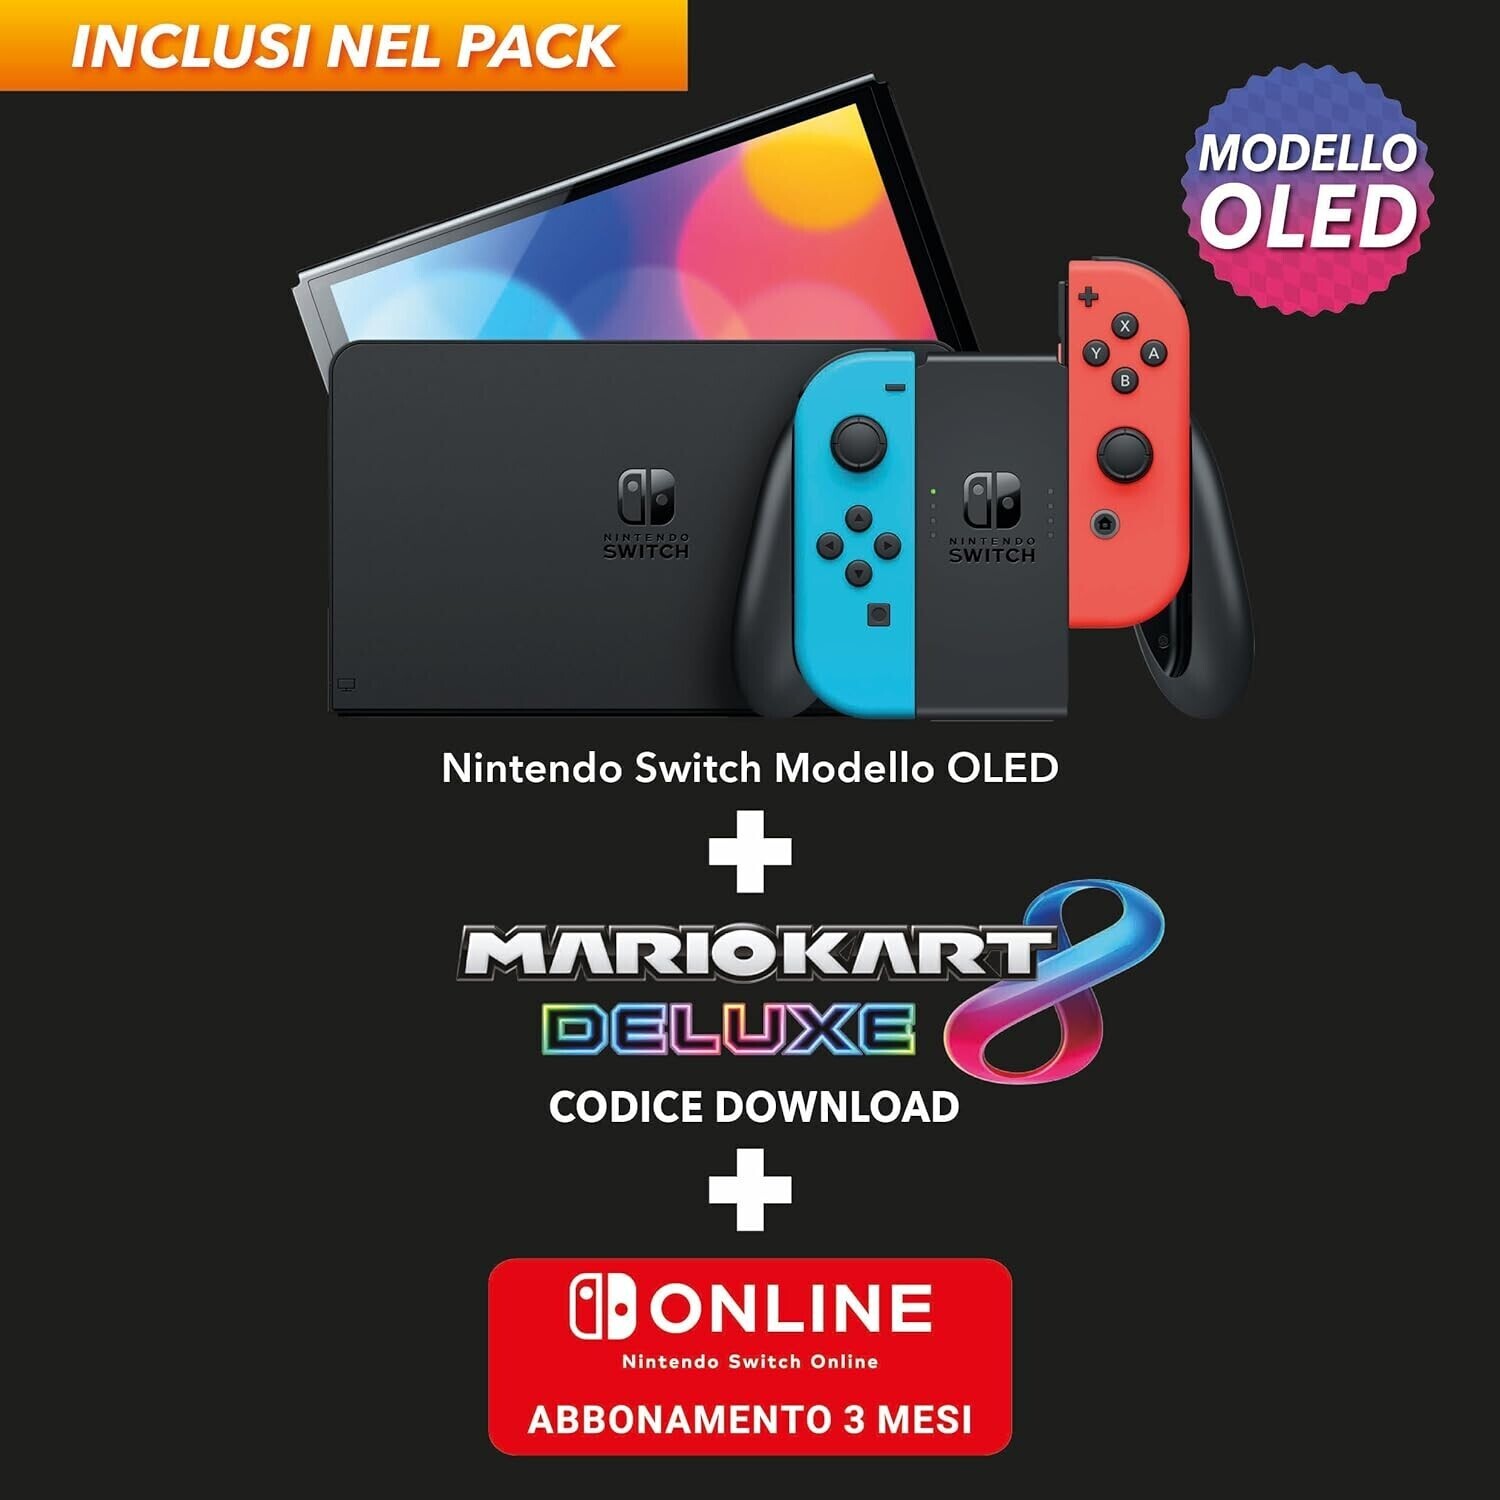 Nintendo Switch (modèle Oled) Avec Manettes Joy-con Bleu Néon